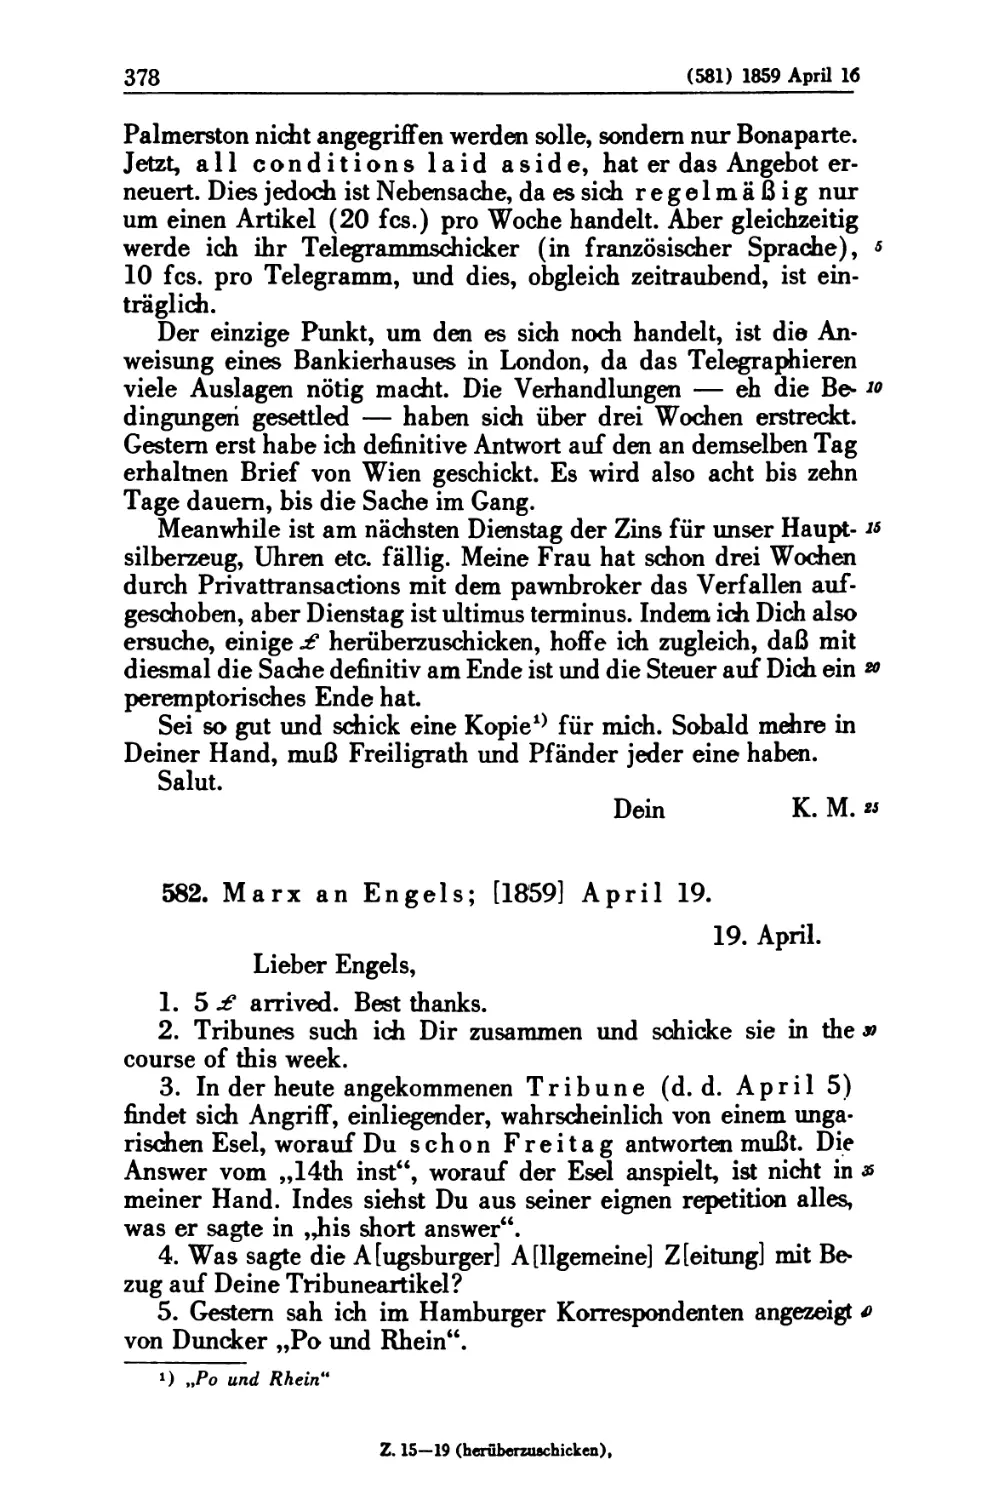 582. Marx an Engels; [1859] April 19